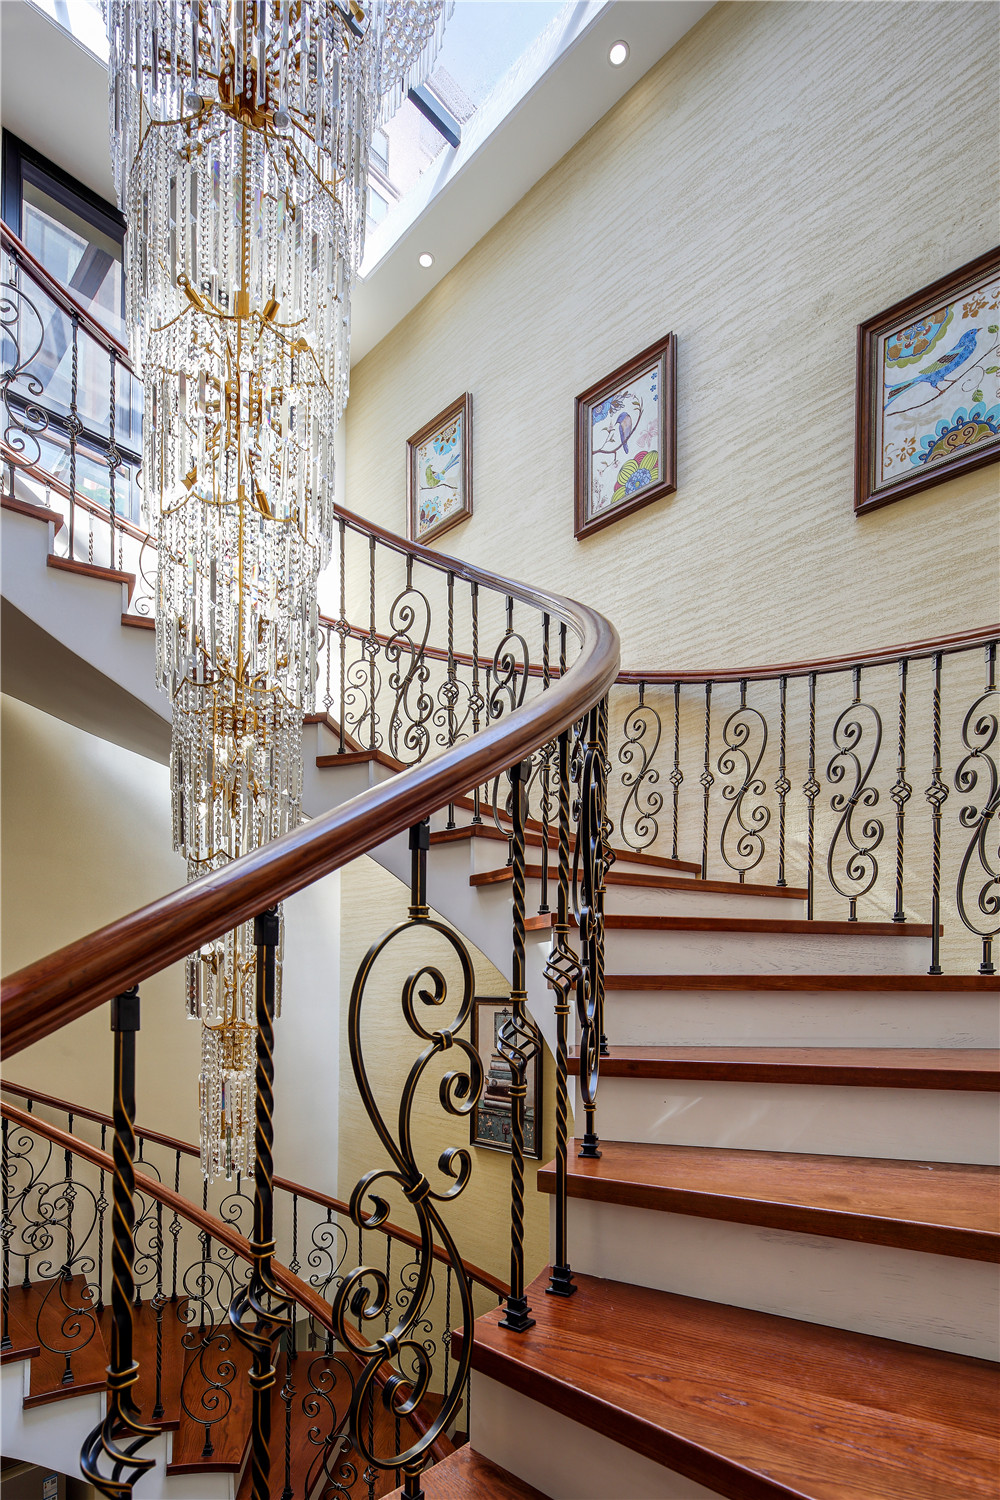 贝尚湾 别墅装修 美式风格 别墅设计师 楼梯图片来自孔继民在贝尚湾别墅欧美风格设计的分享